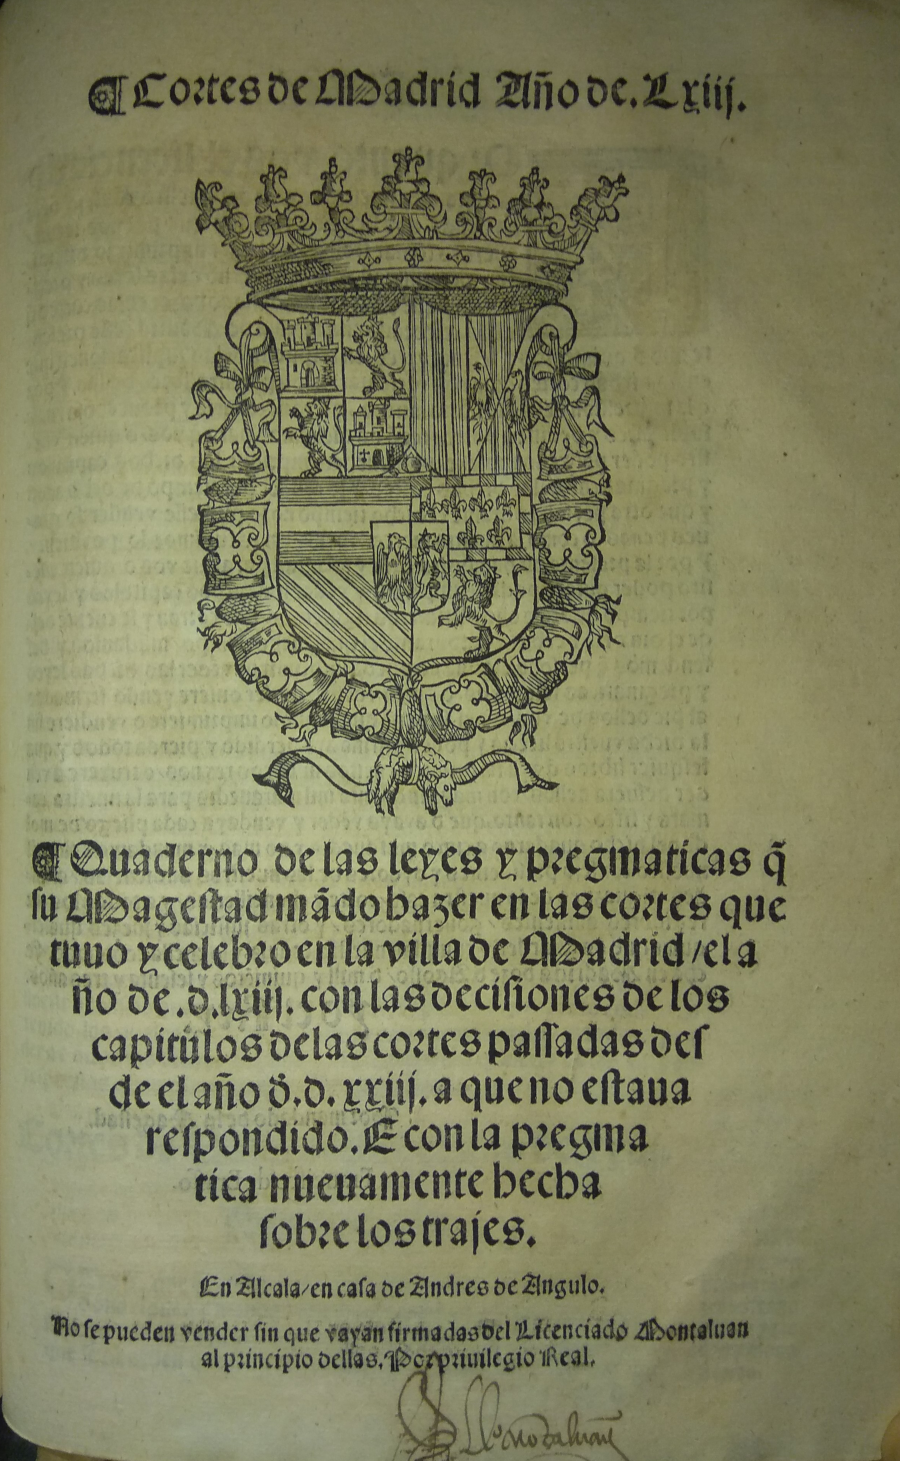 Cortes de Madrid. Año de LXIIj, 1563